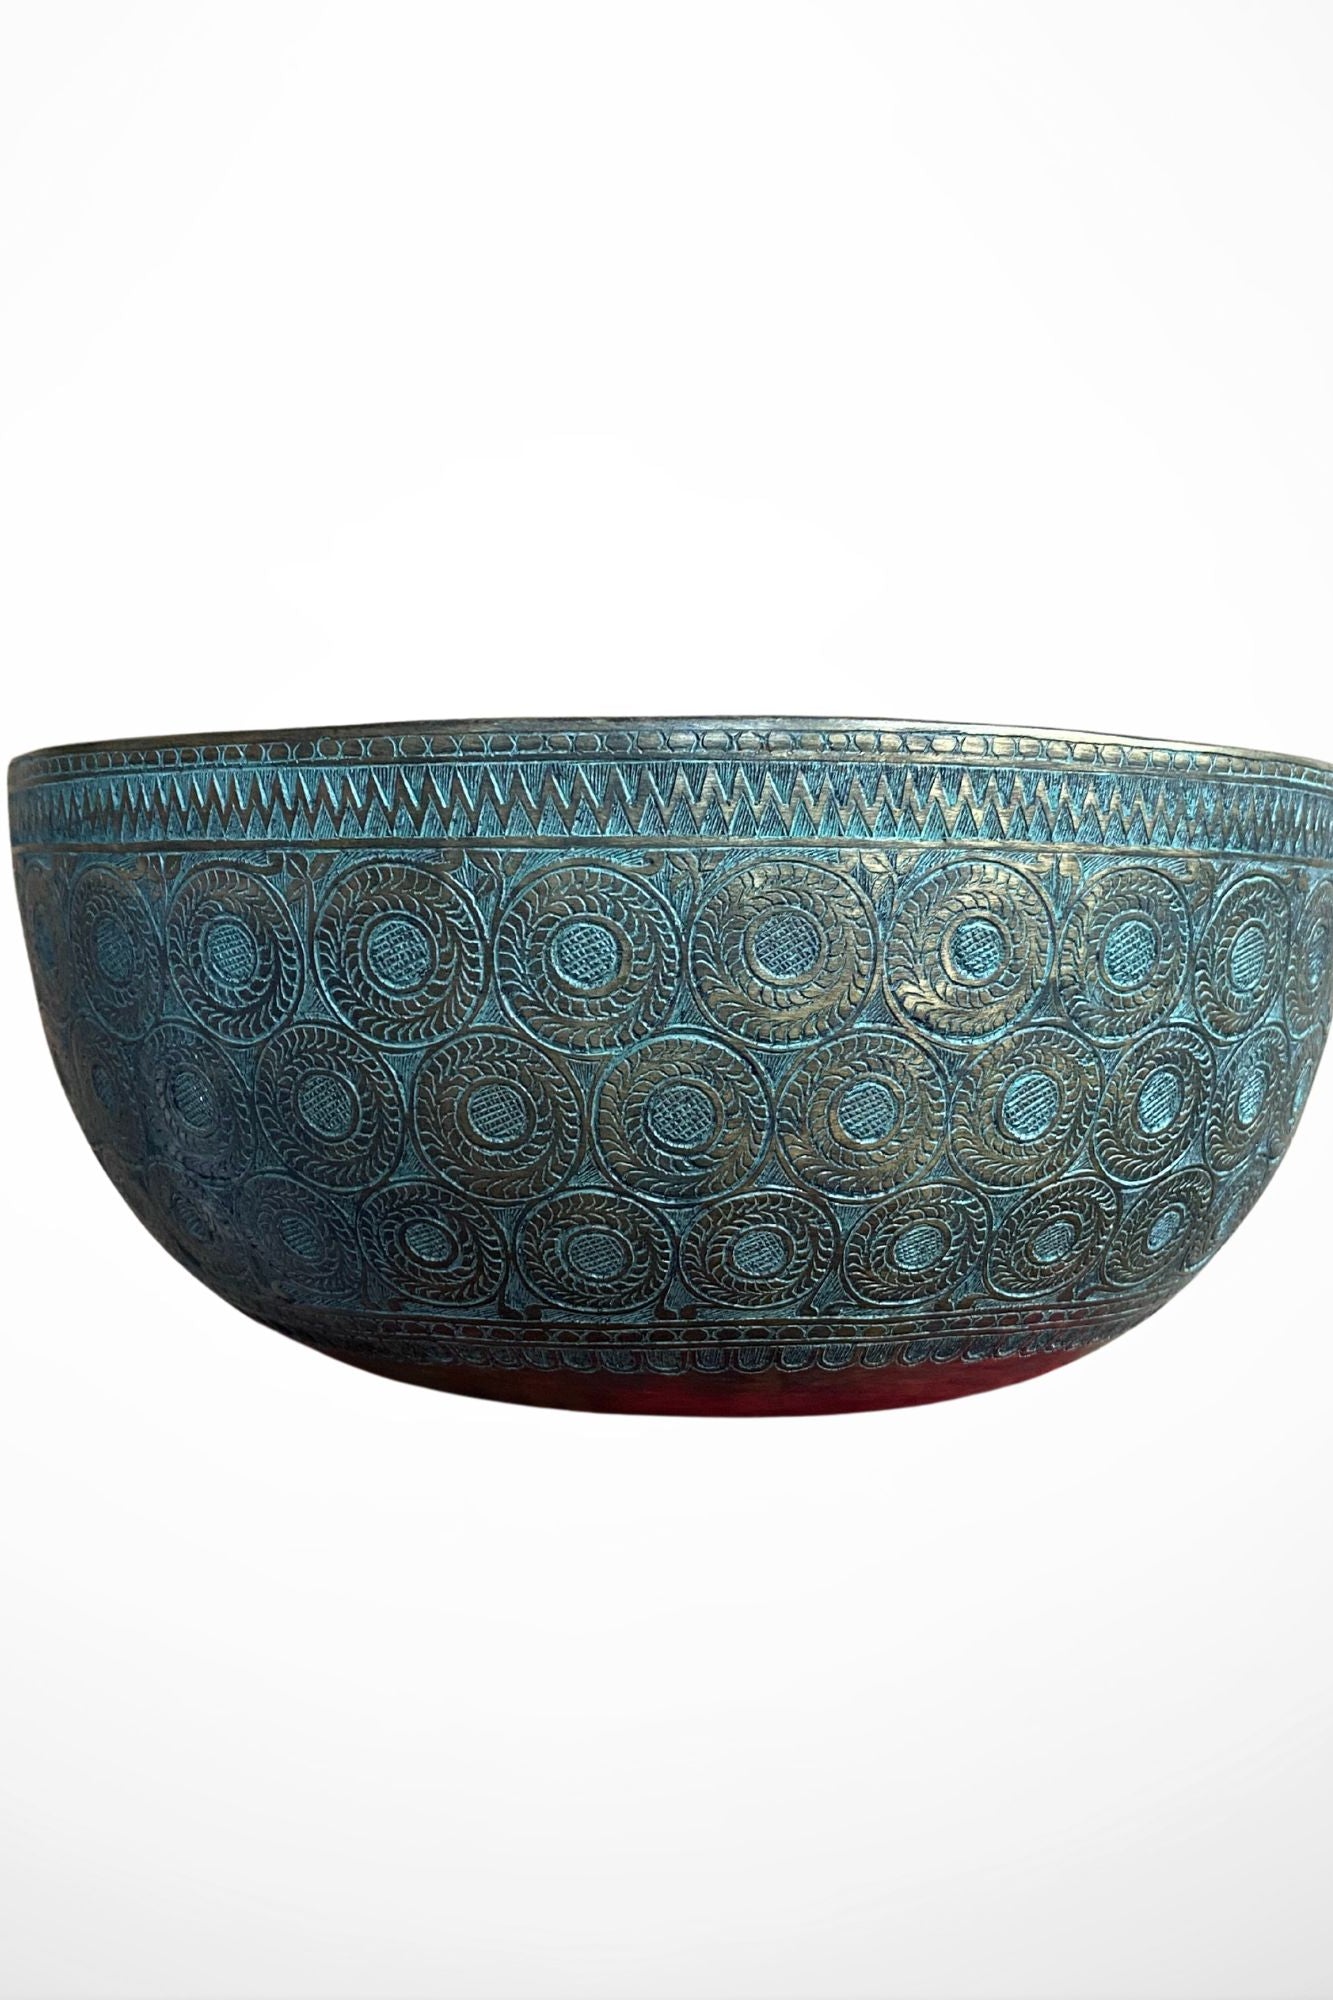 Antique Jambati Carved Singing Bowl for meditation.